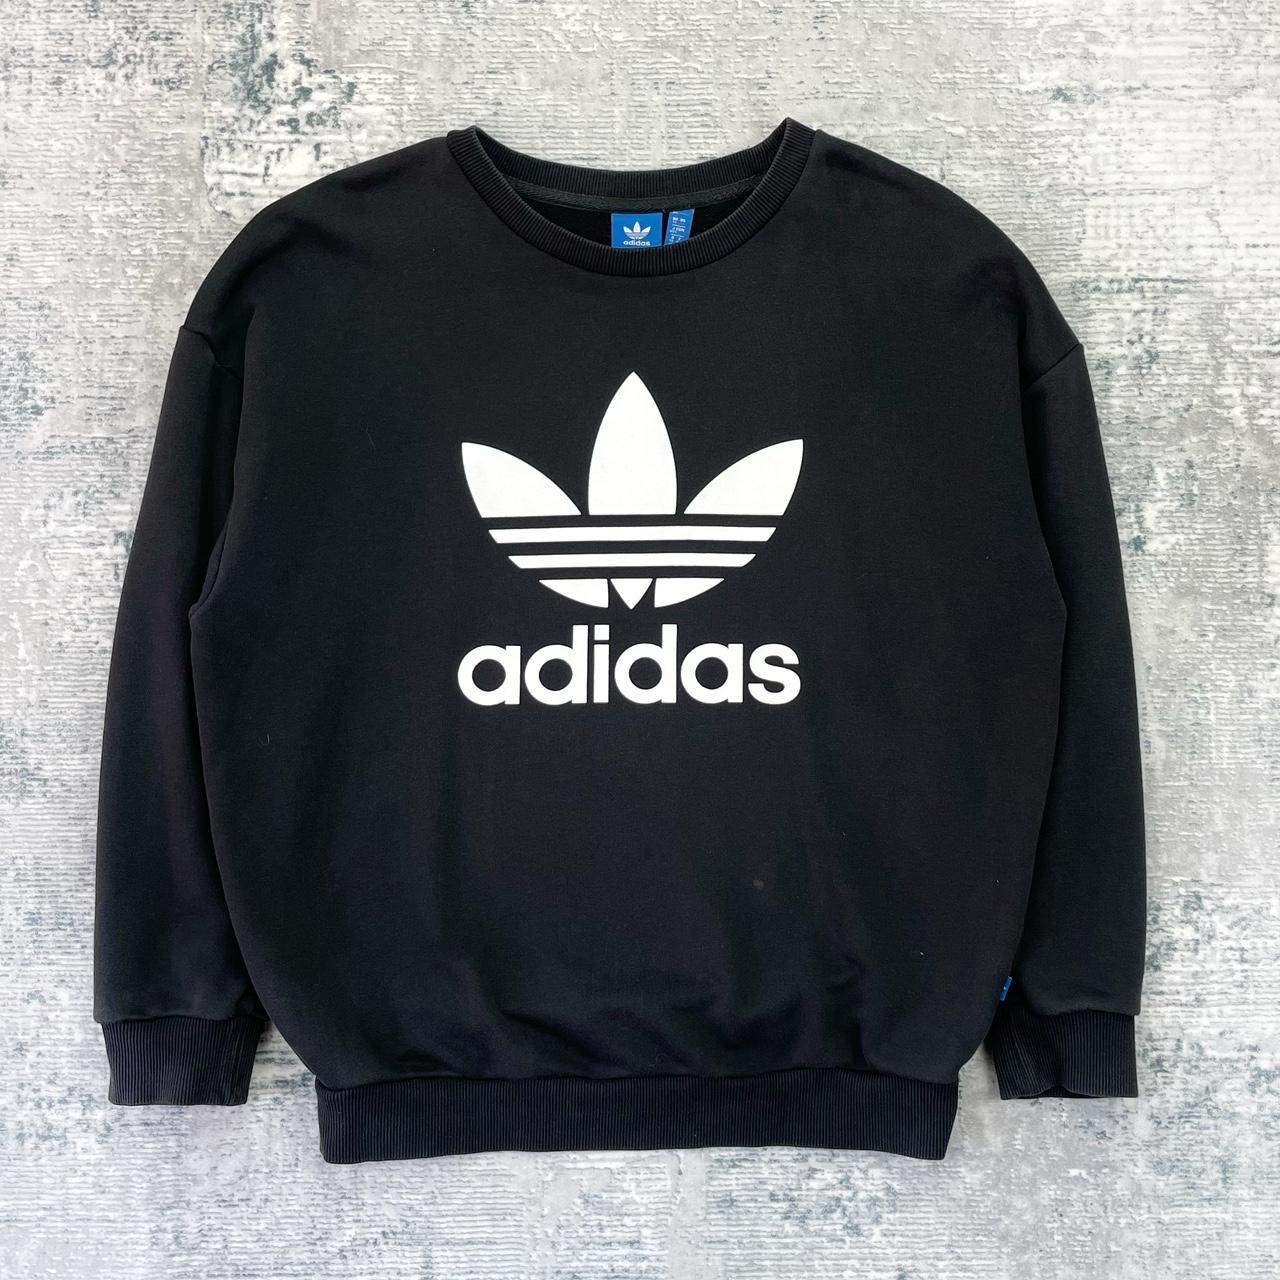 Adidas Y2K Sweatshirt - Womens Medium